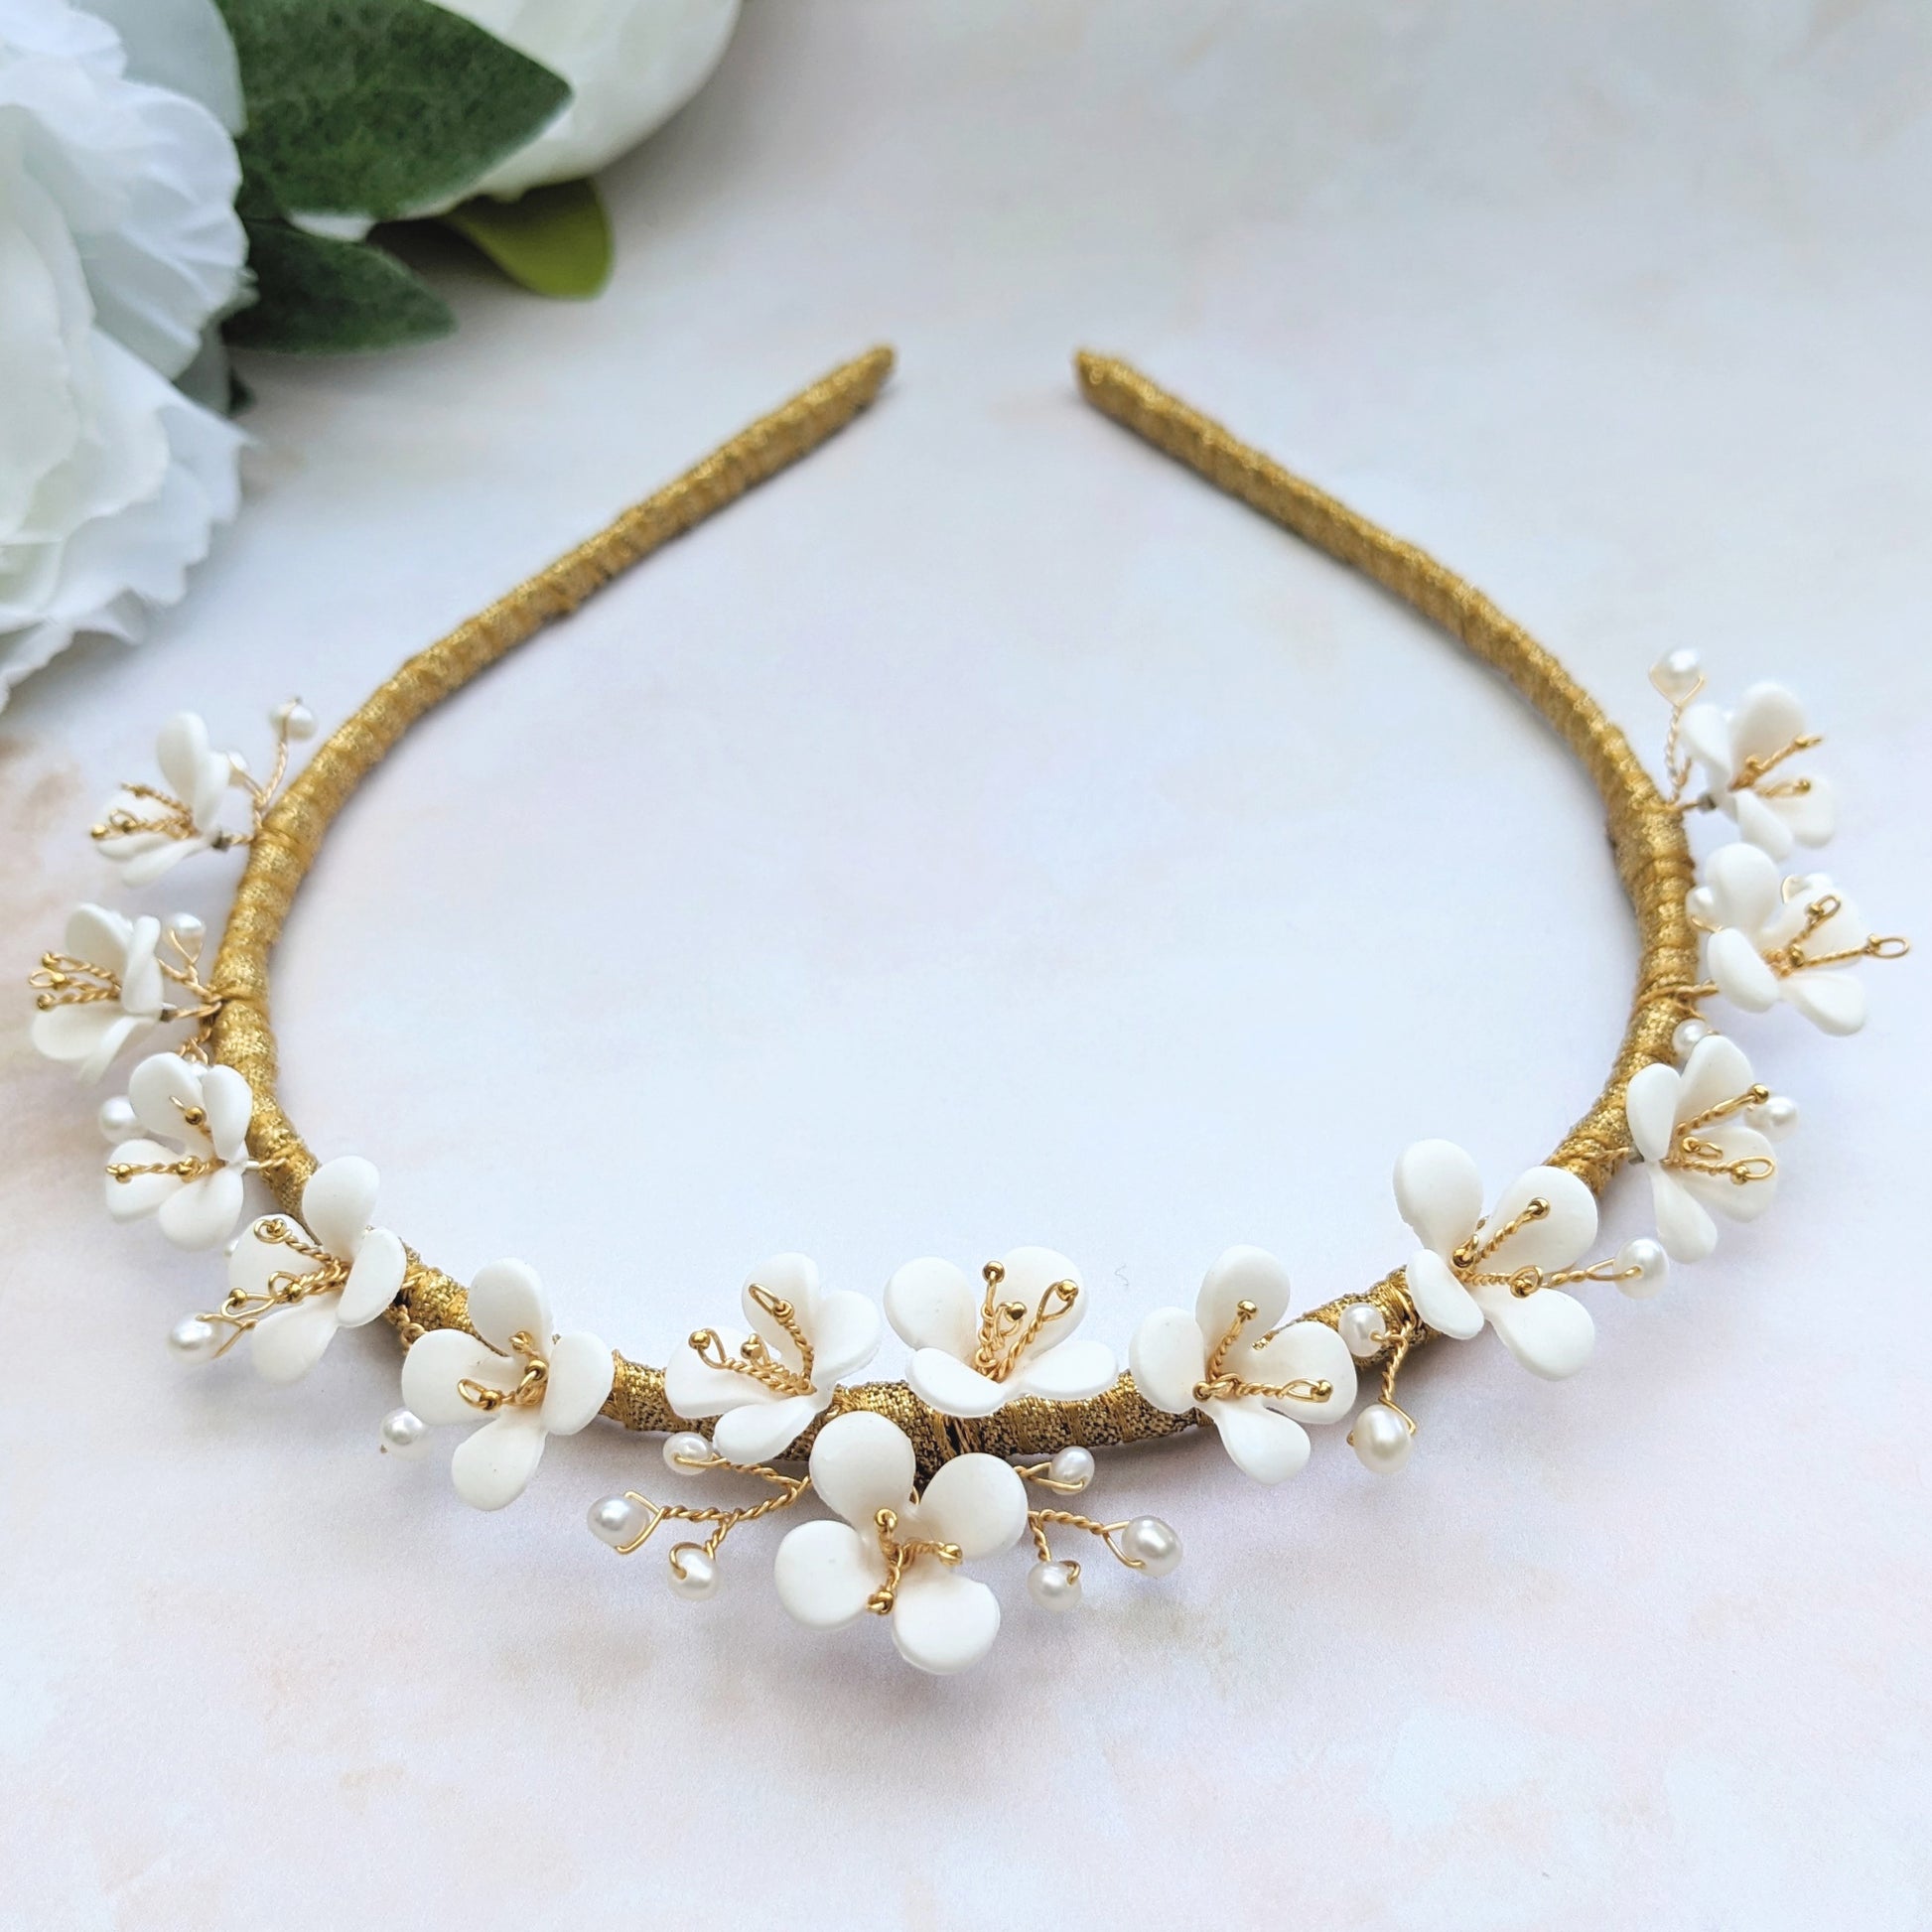 Modern floral bridal crown for weddings - Susie Warner